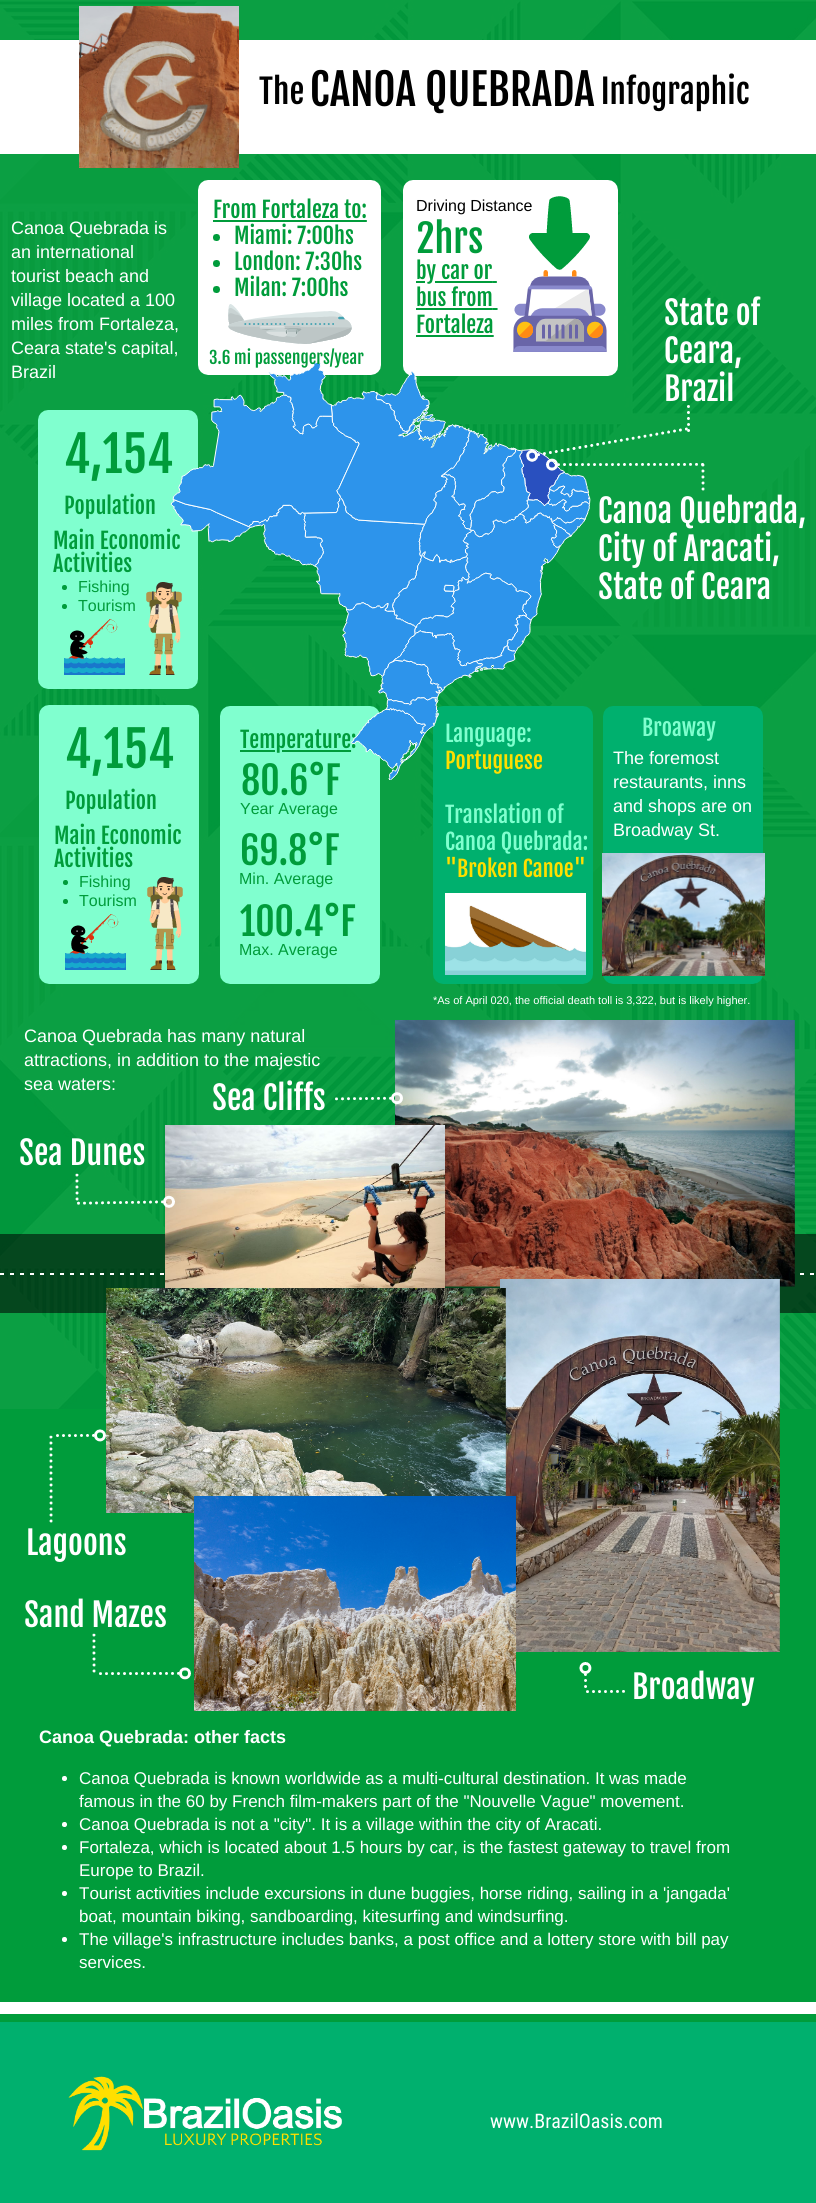 The Canoa Quebrada Infographic